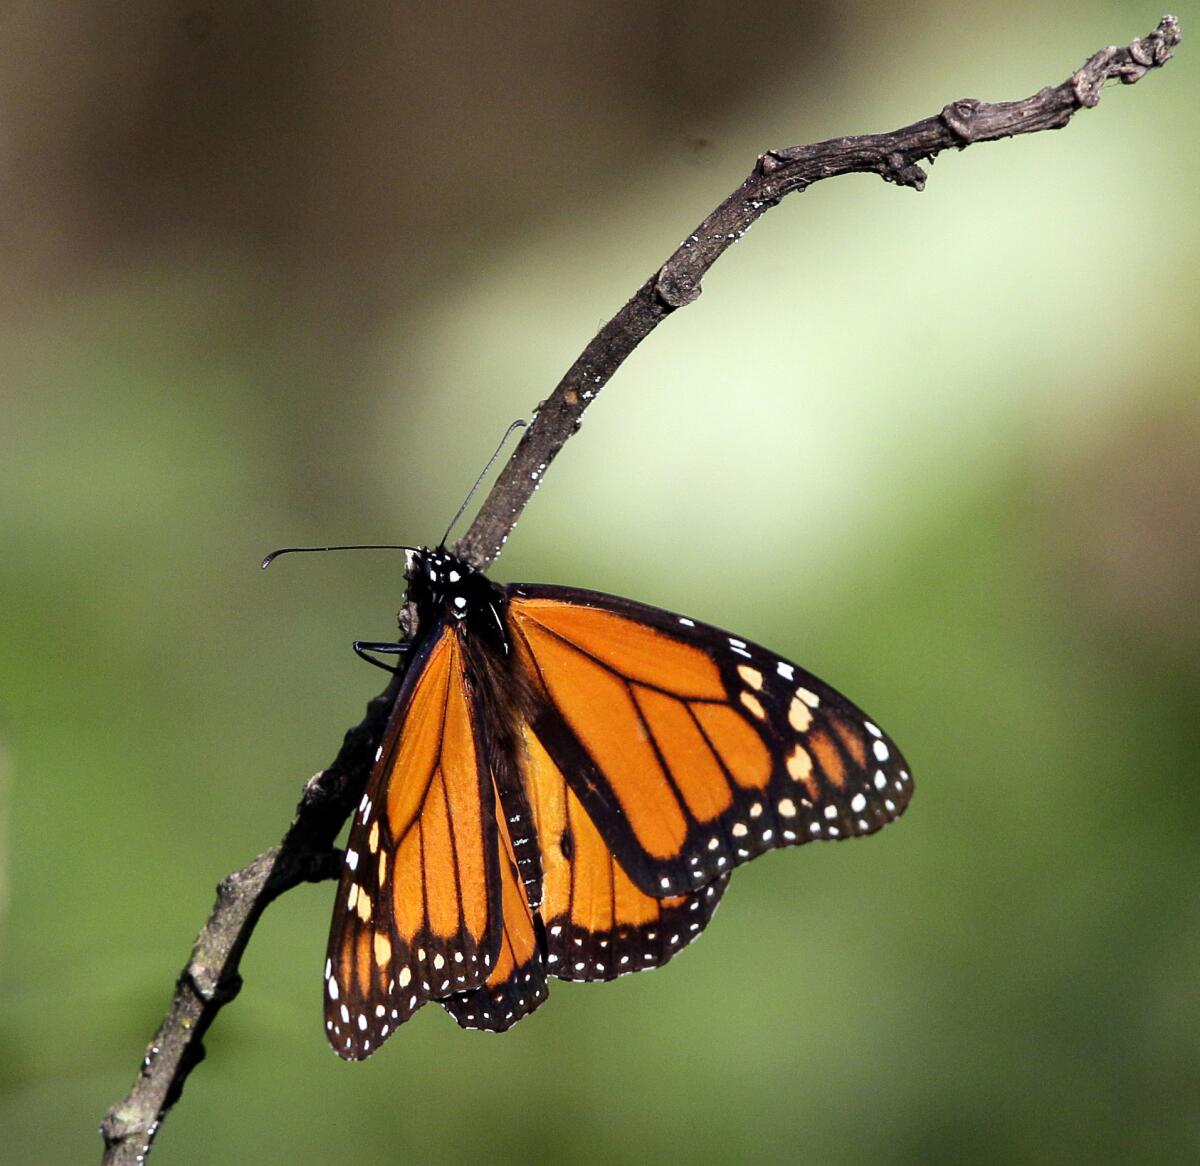 Fotografia que muestra un ejemplar de mariposa Monarca en su santuario de la población de Angangeo, México al oriente de Michoacan en donde establece sus colonias a mediados de octubre y principio de noviembre.